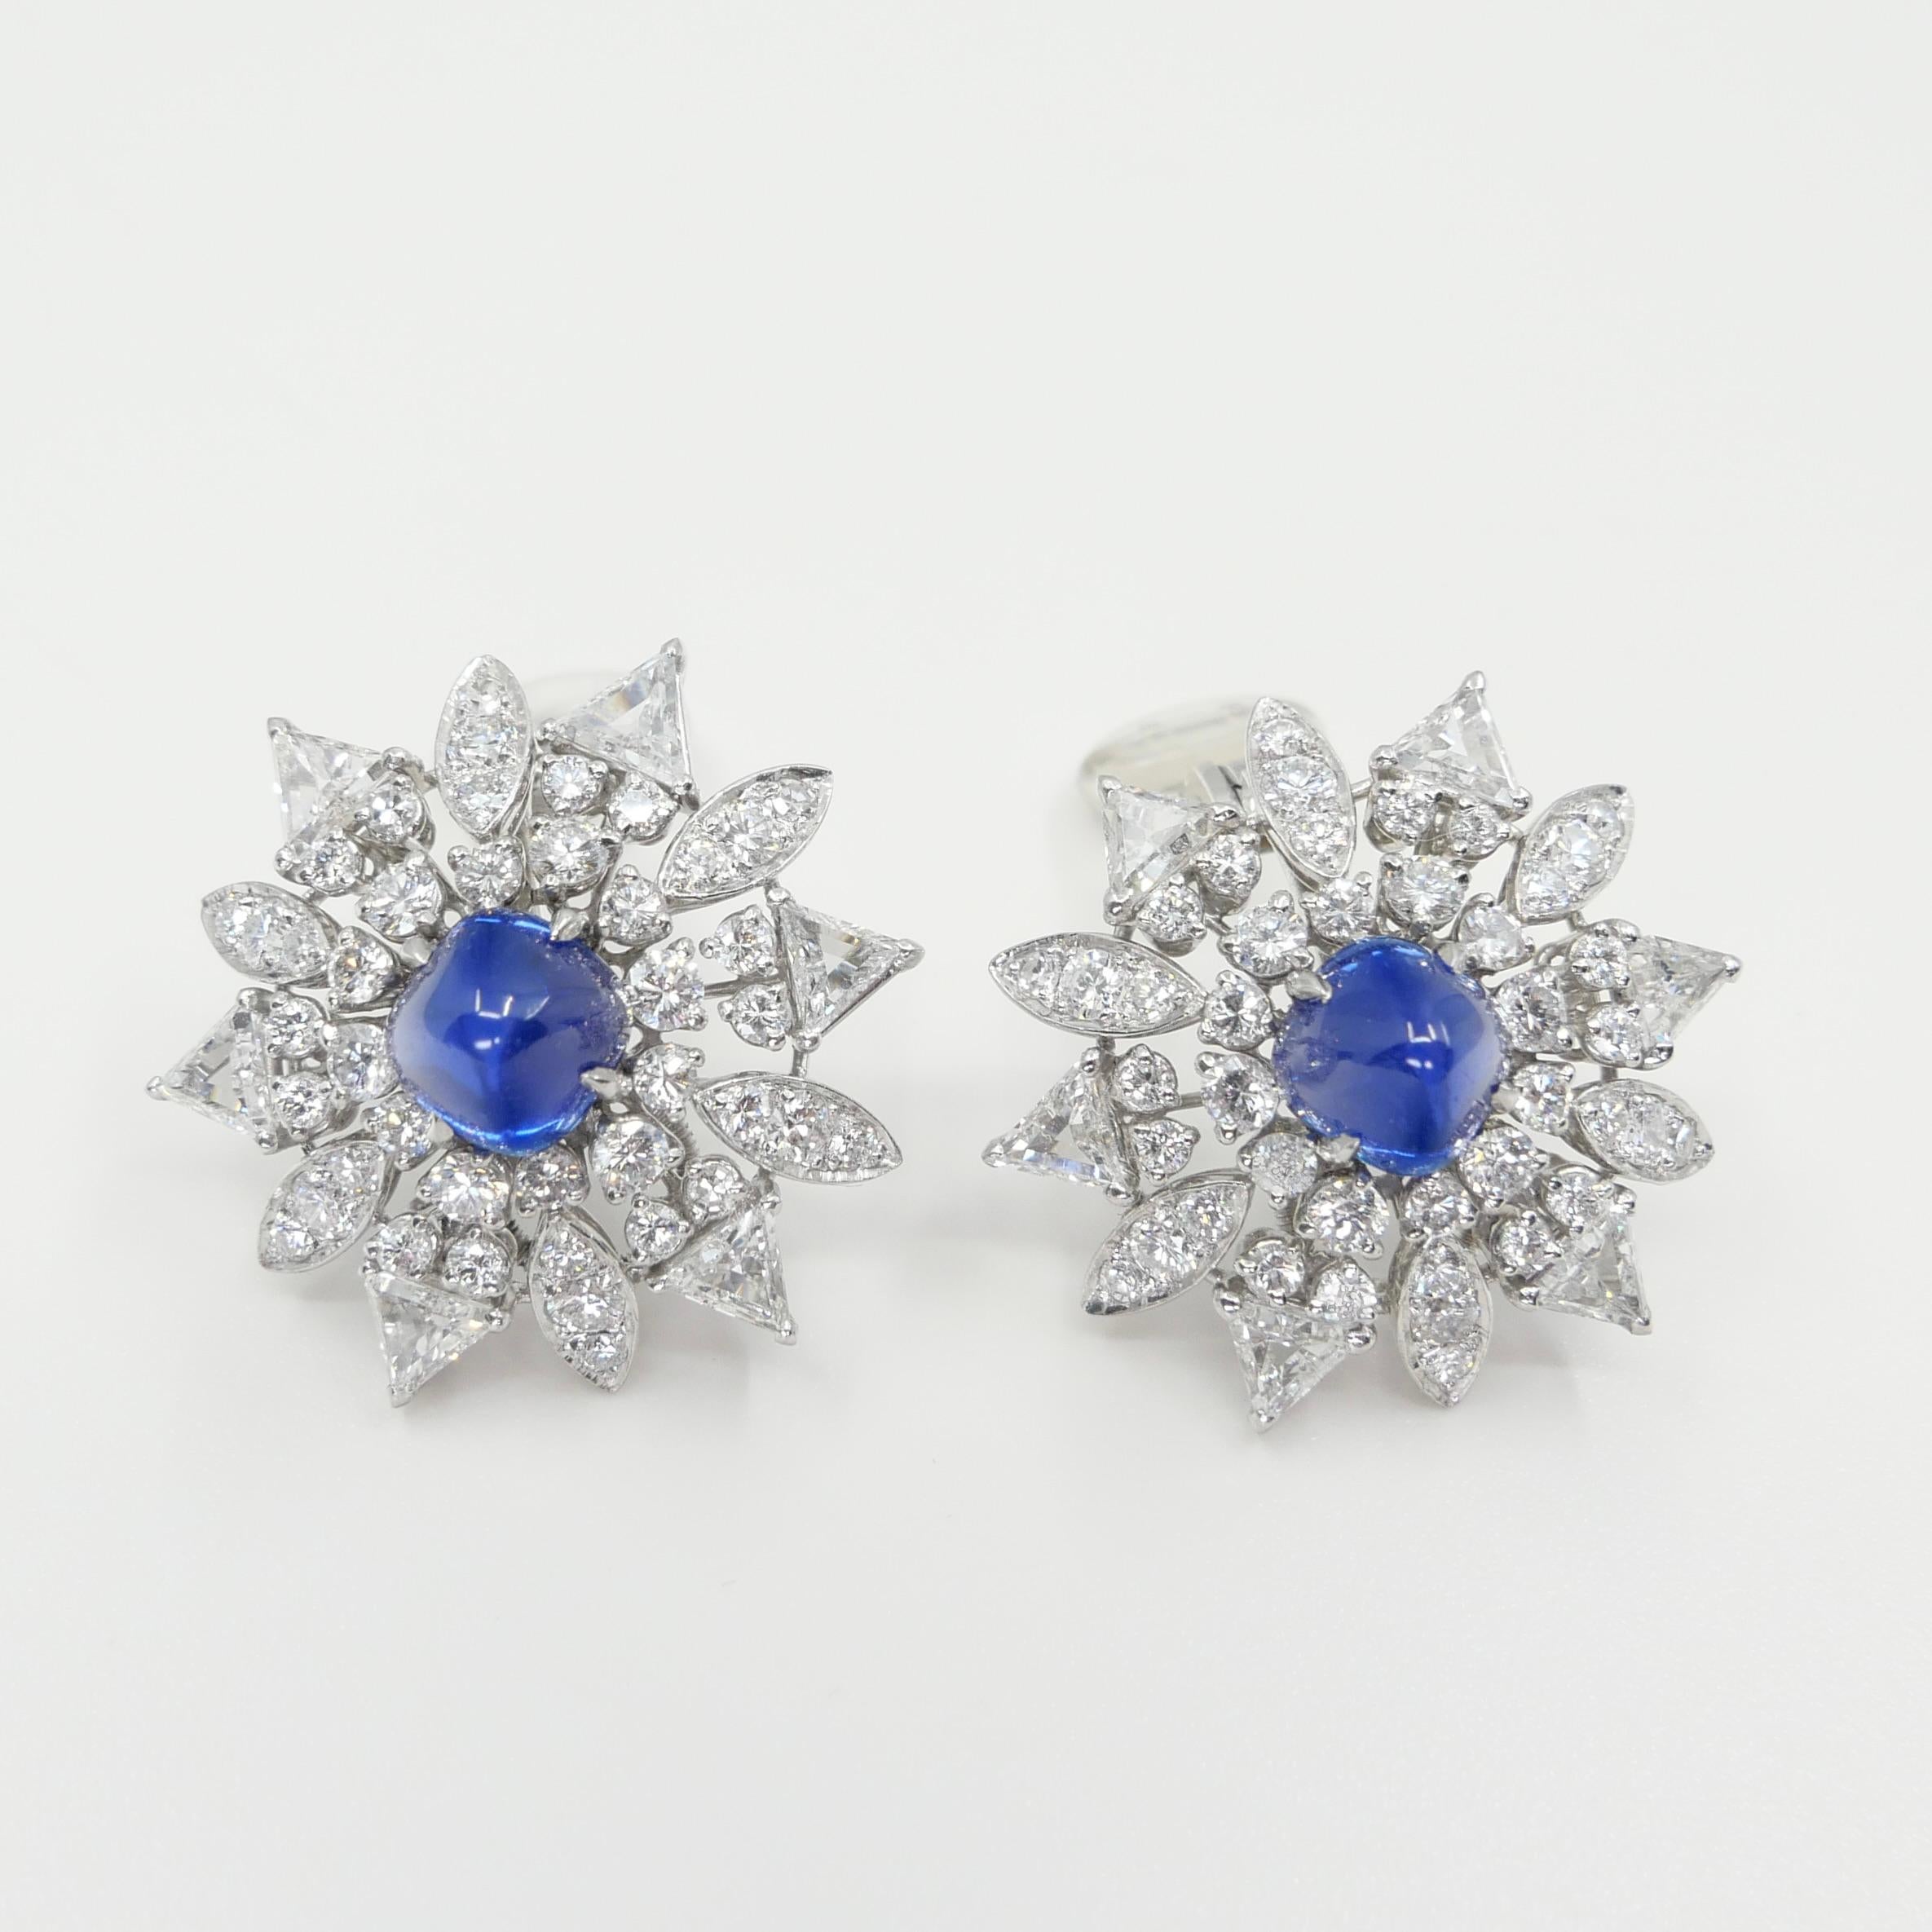 Certified Kashmir Sapphire No Heat Diamond Cluster Earrings, Cornflower Blue 6